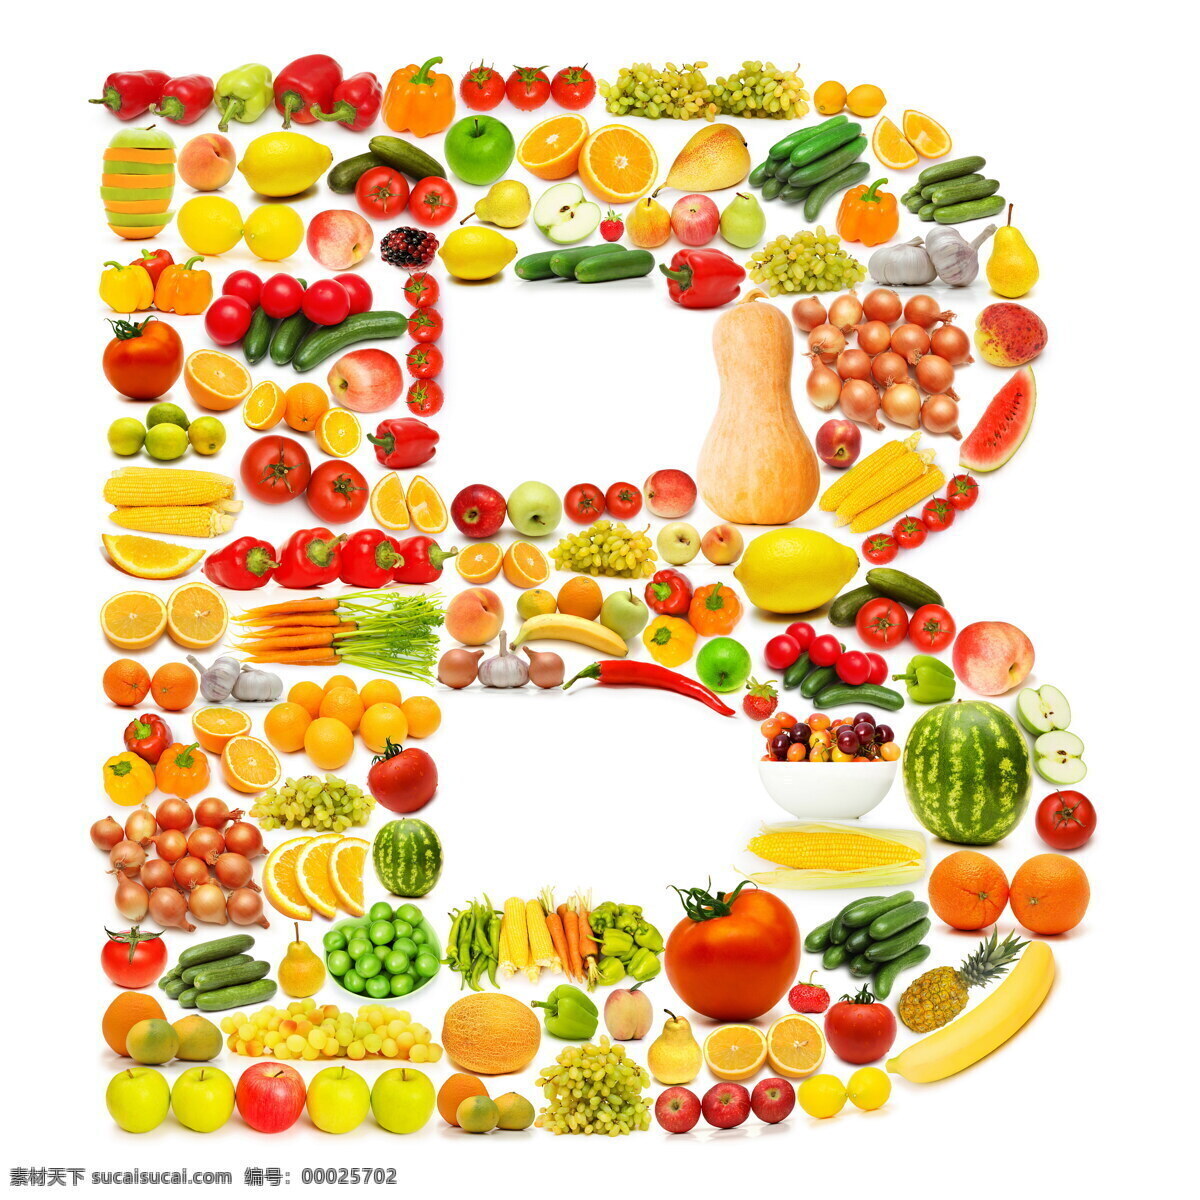 水果 蔬菜 组成 字母 b 字母b 食物 香蕉 葡萄 黄瓜 辣椒 草莓 水果蔬菜 餐饮美食 书画文字 文化艺术 白色